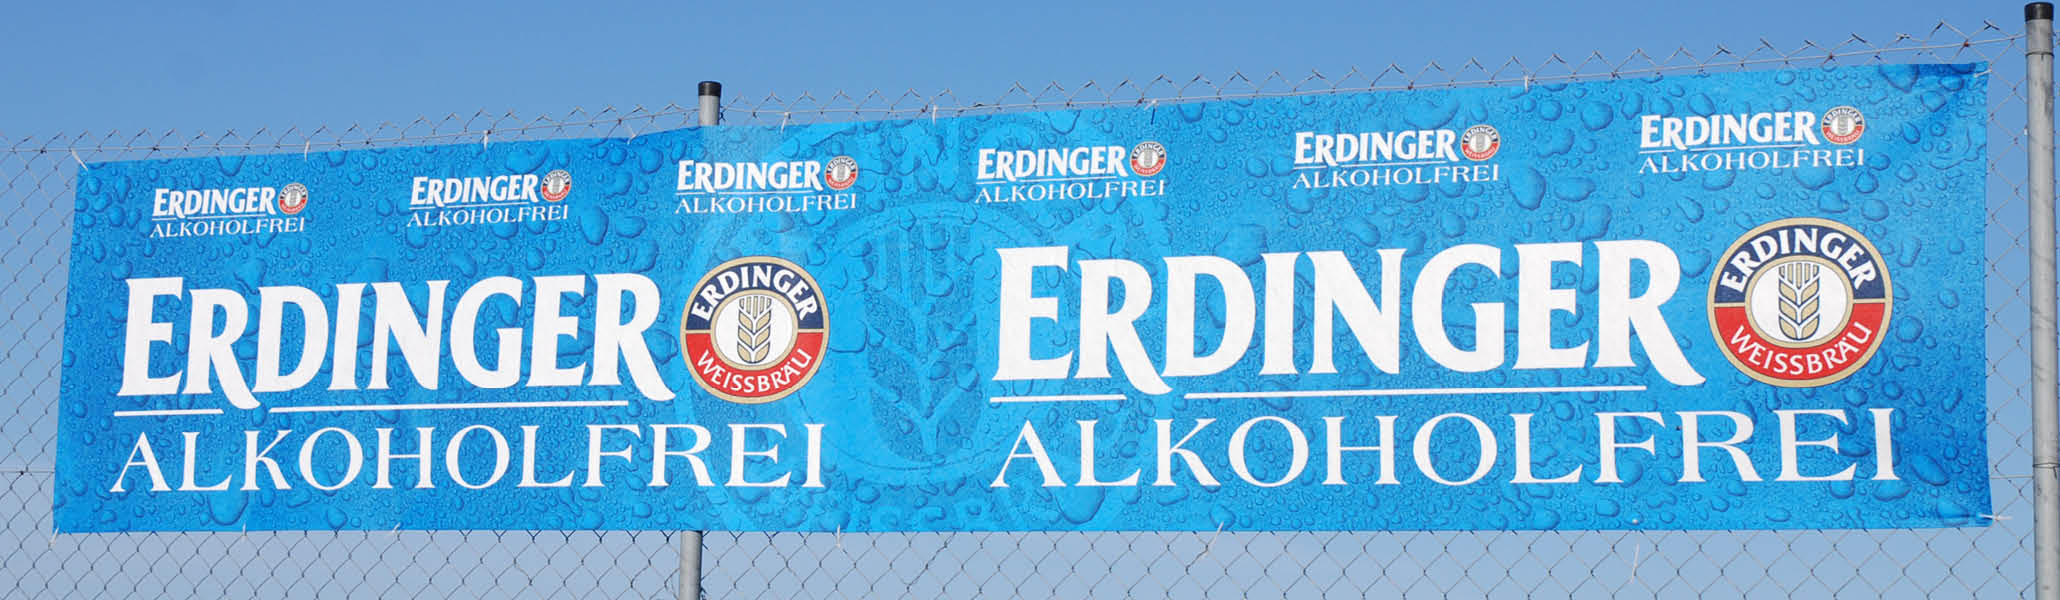 Banner-Werbung mit Vliesbanner, hier für die Erdinger Brauerei